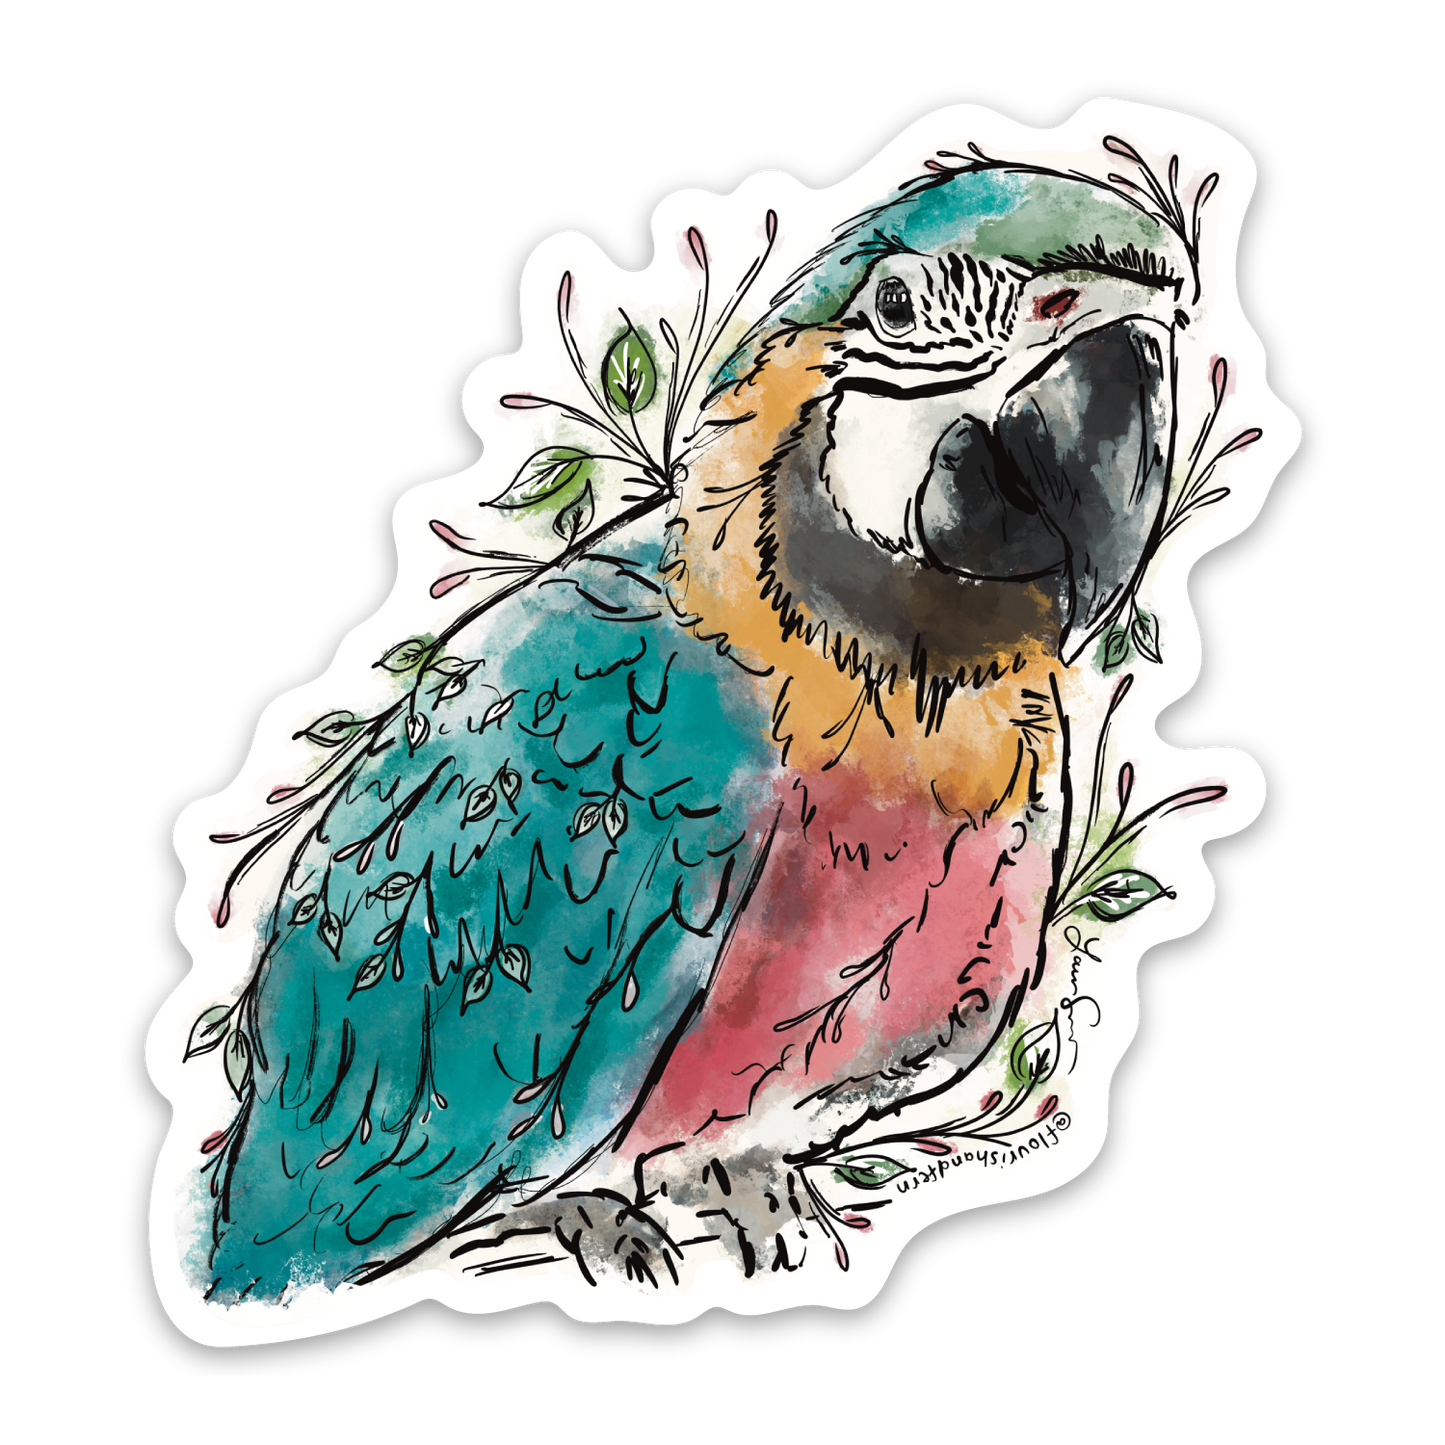 Macaw Sticker